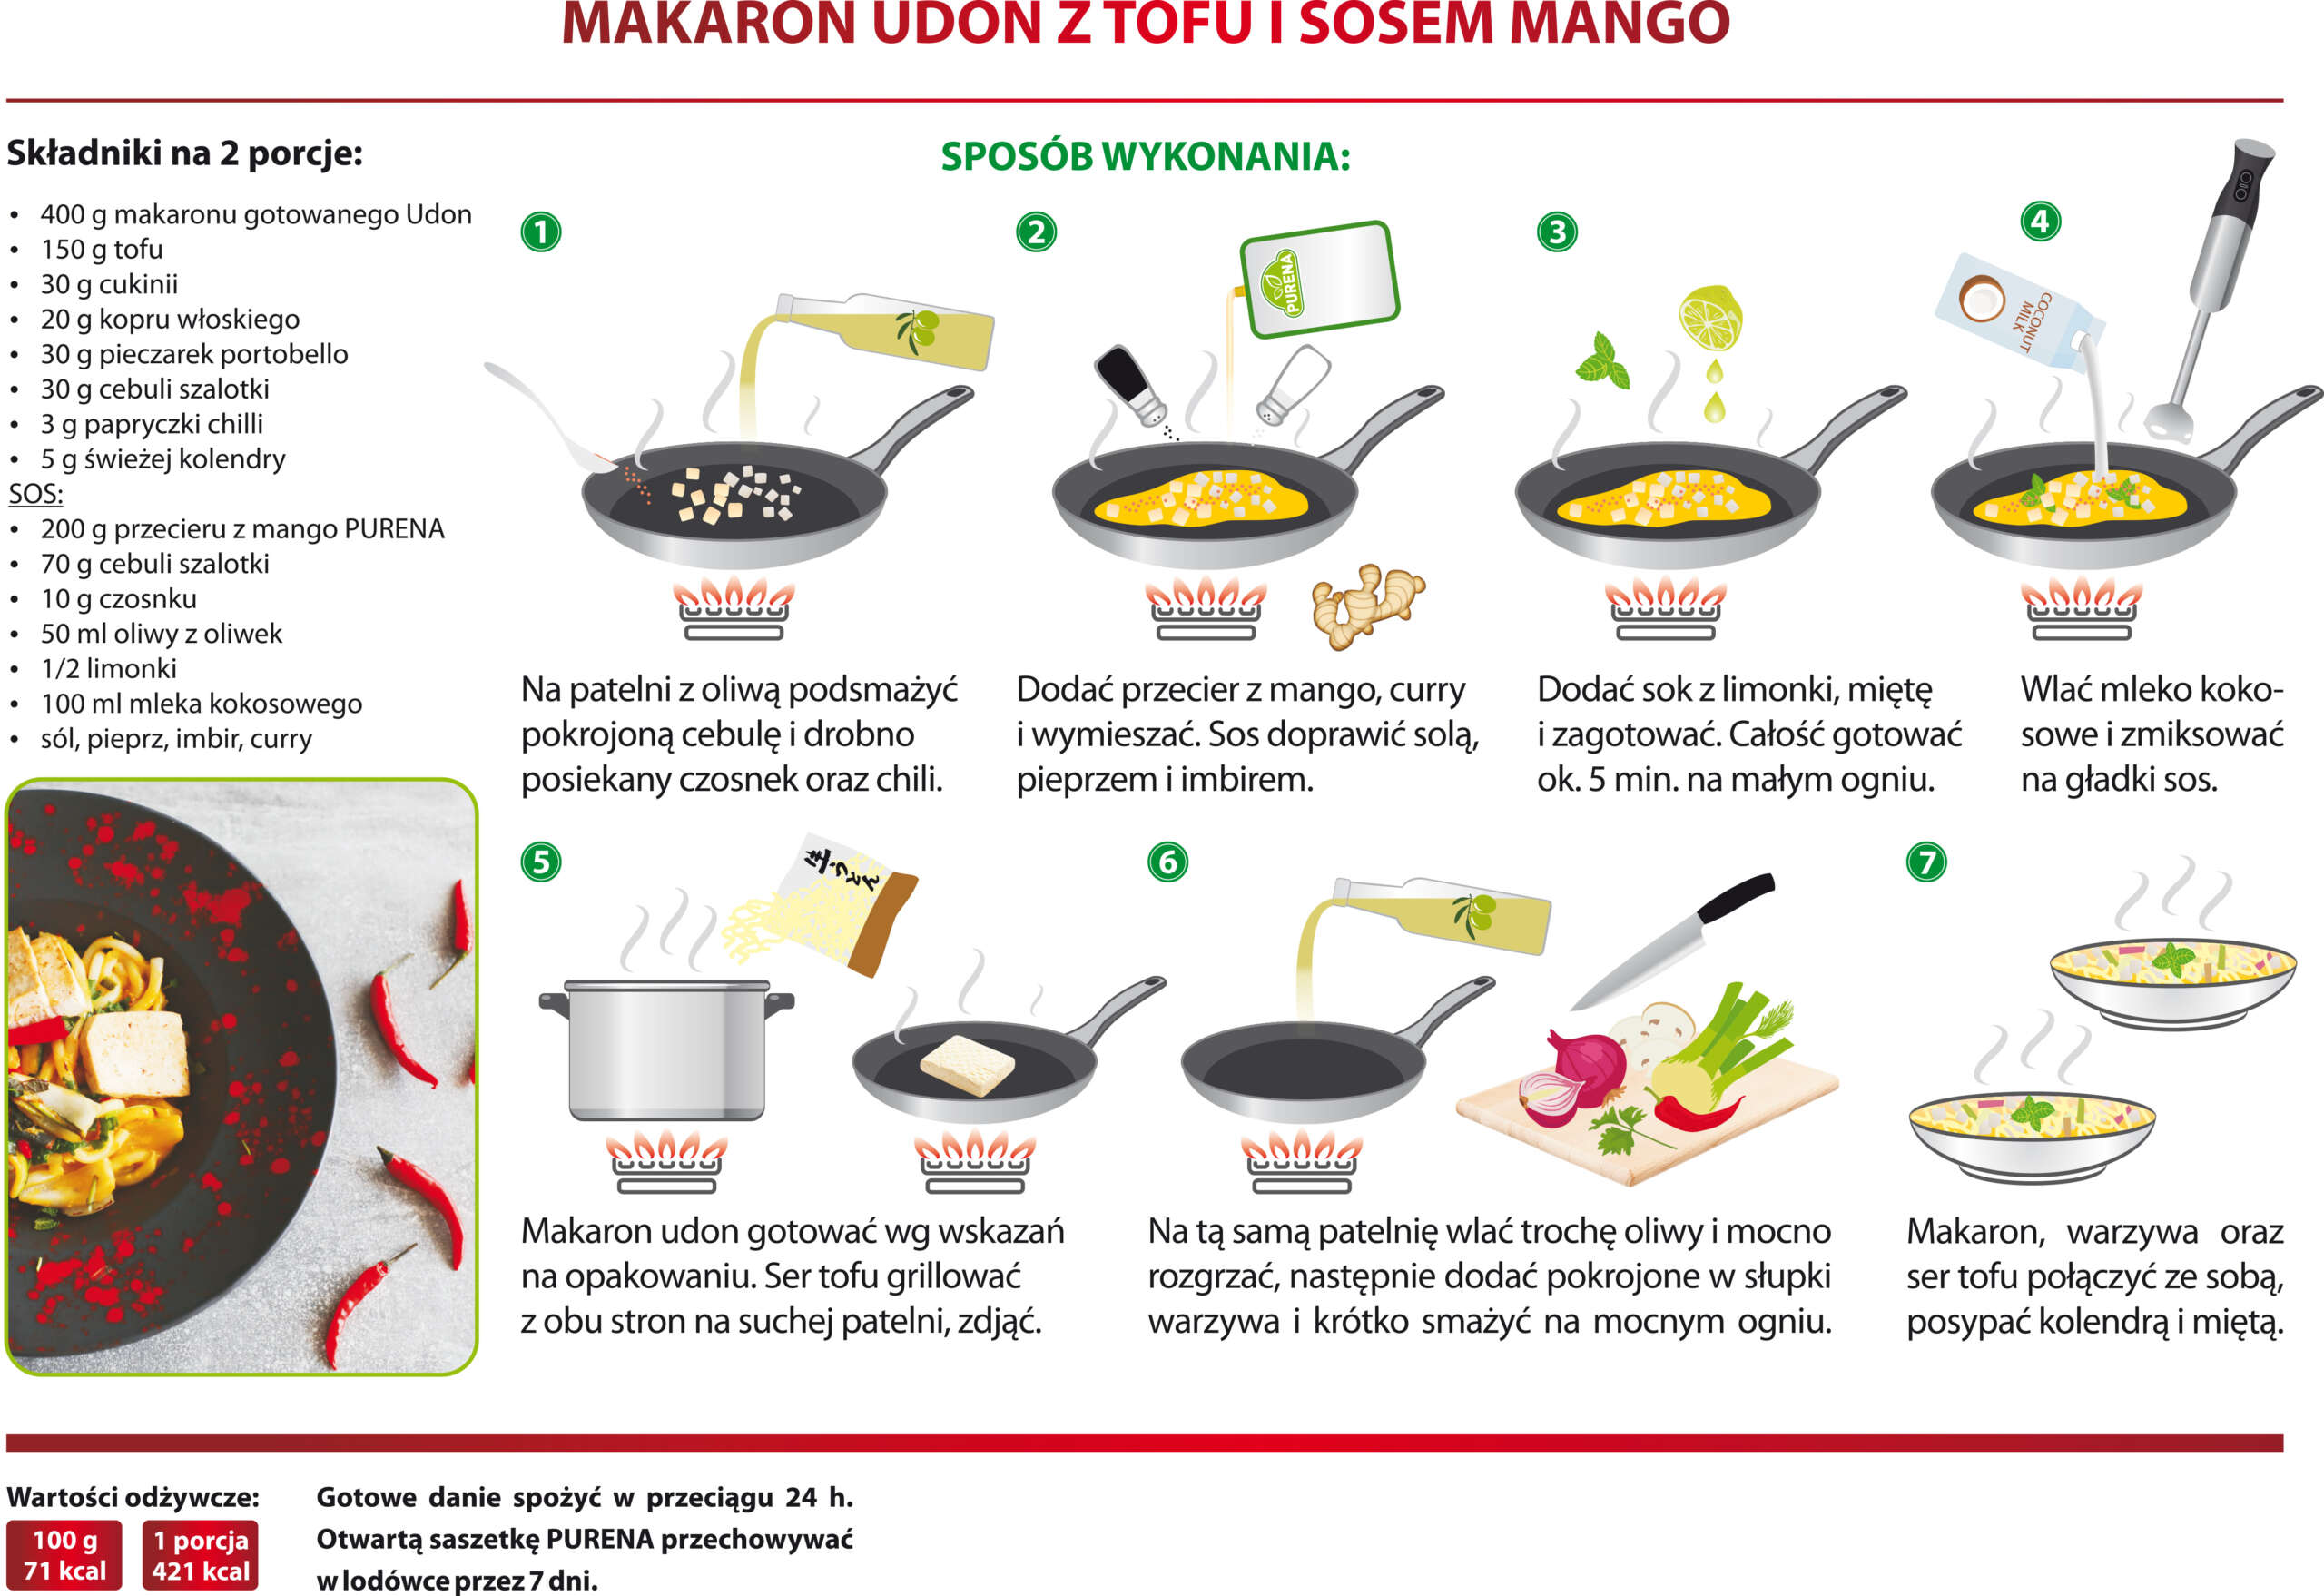 Makaron udon z tofu i sosem mango